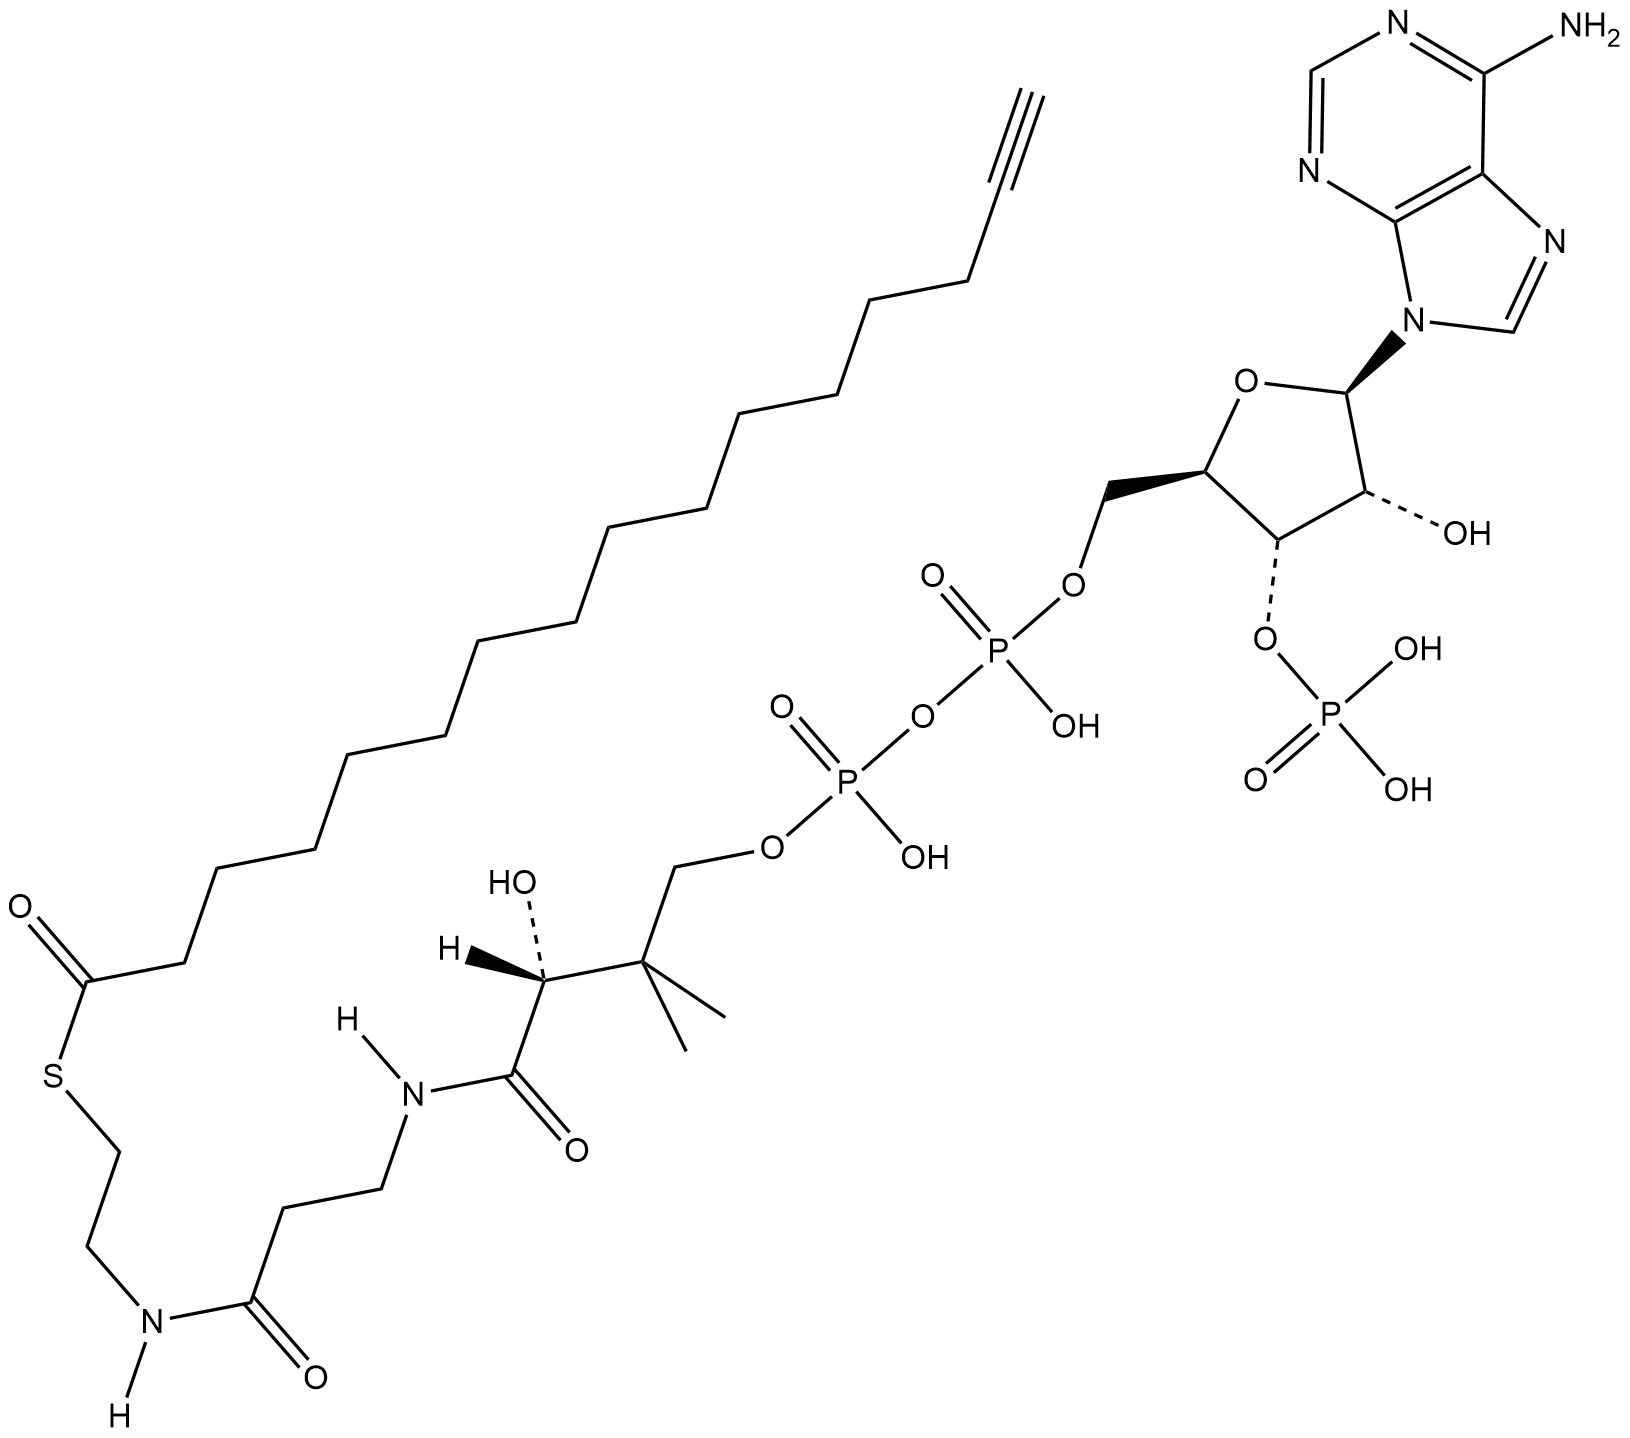 Palmitoyl Alkyne-Coenzyme A